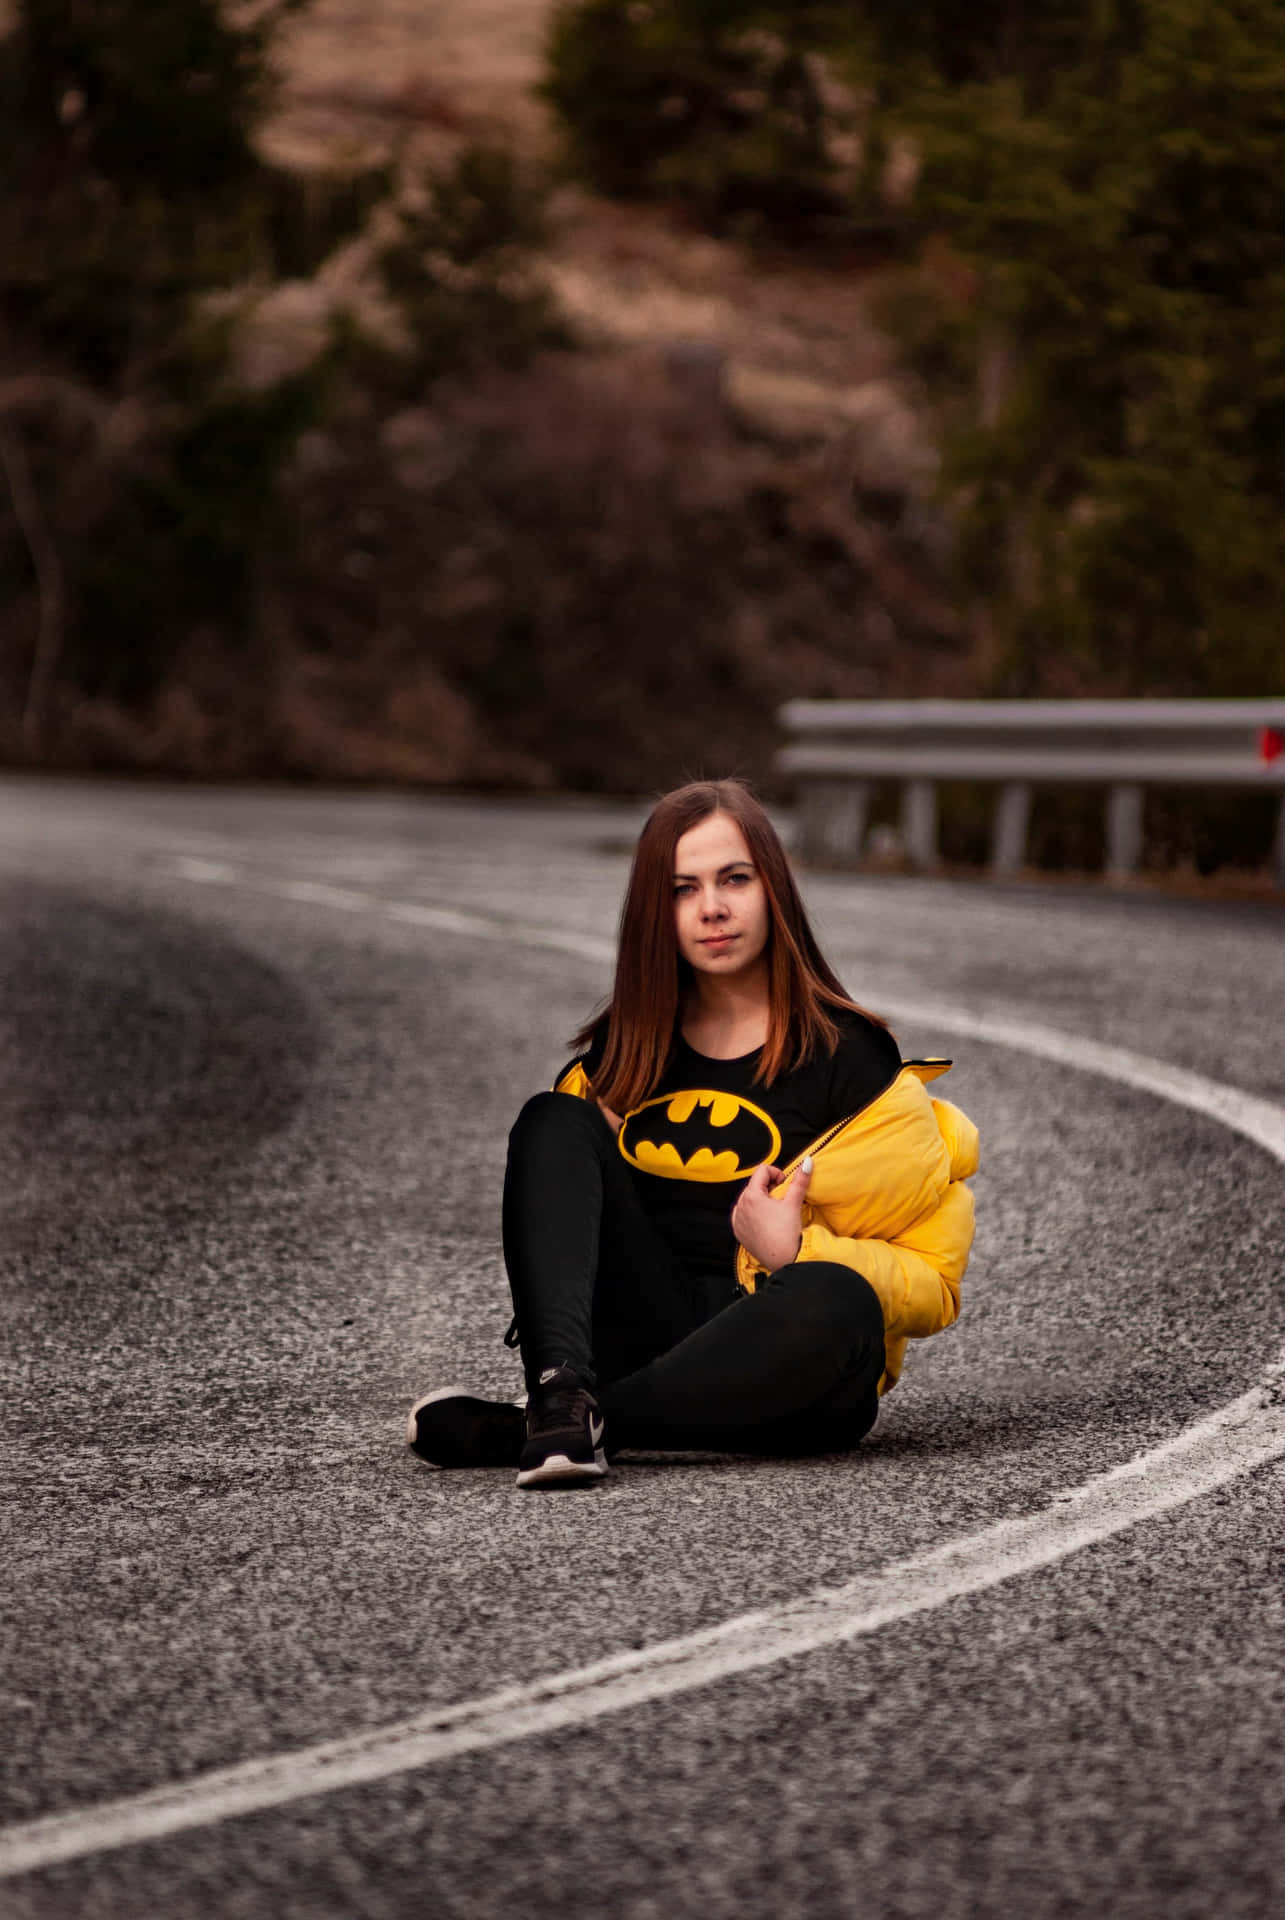 Imagende Una Dama Sentada En Una Pose Con Una Camiseta De Batman.